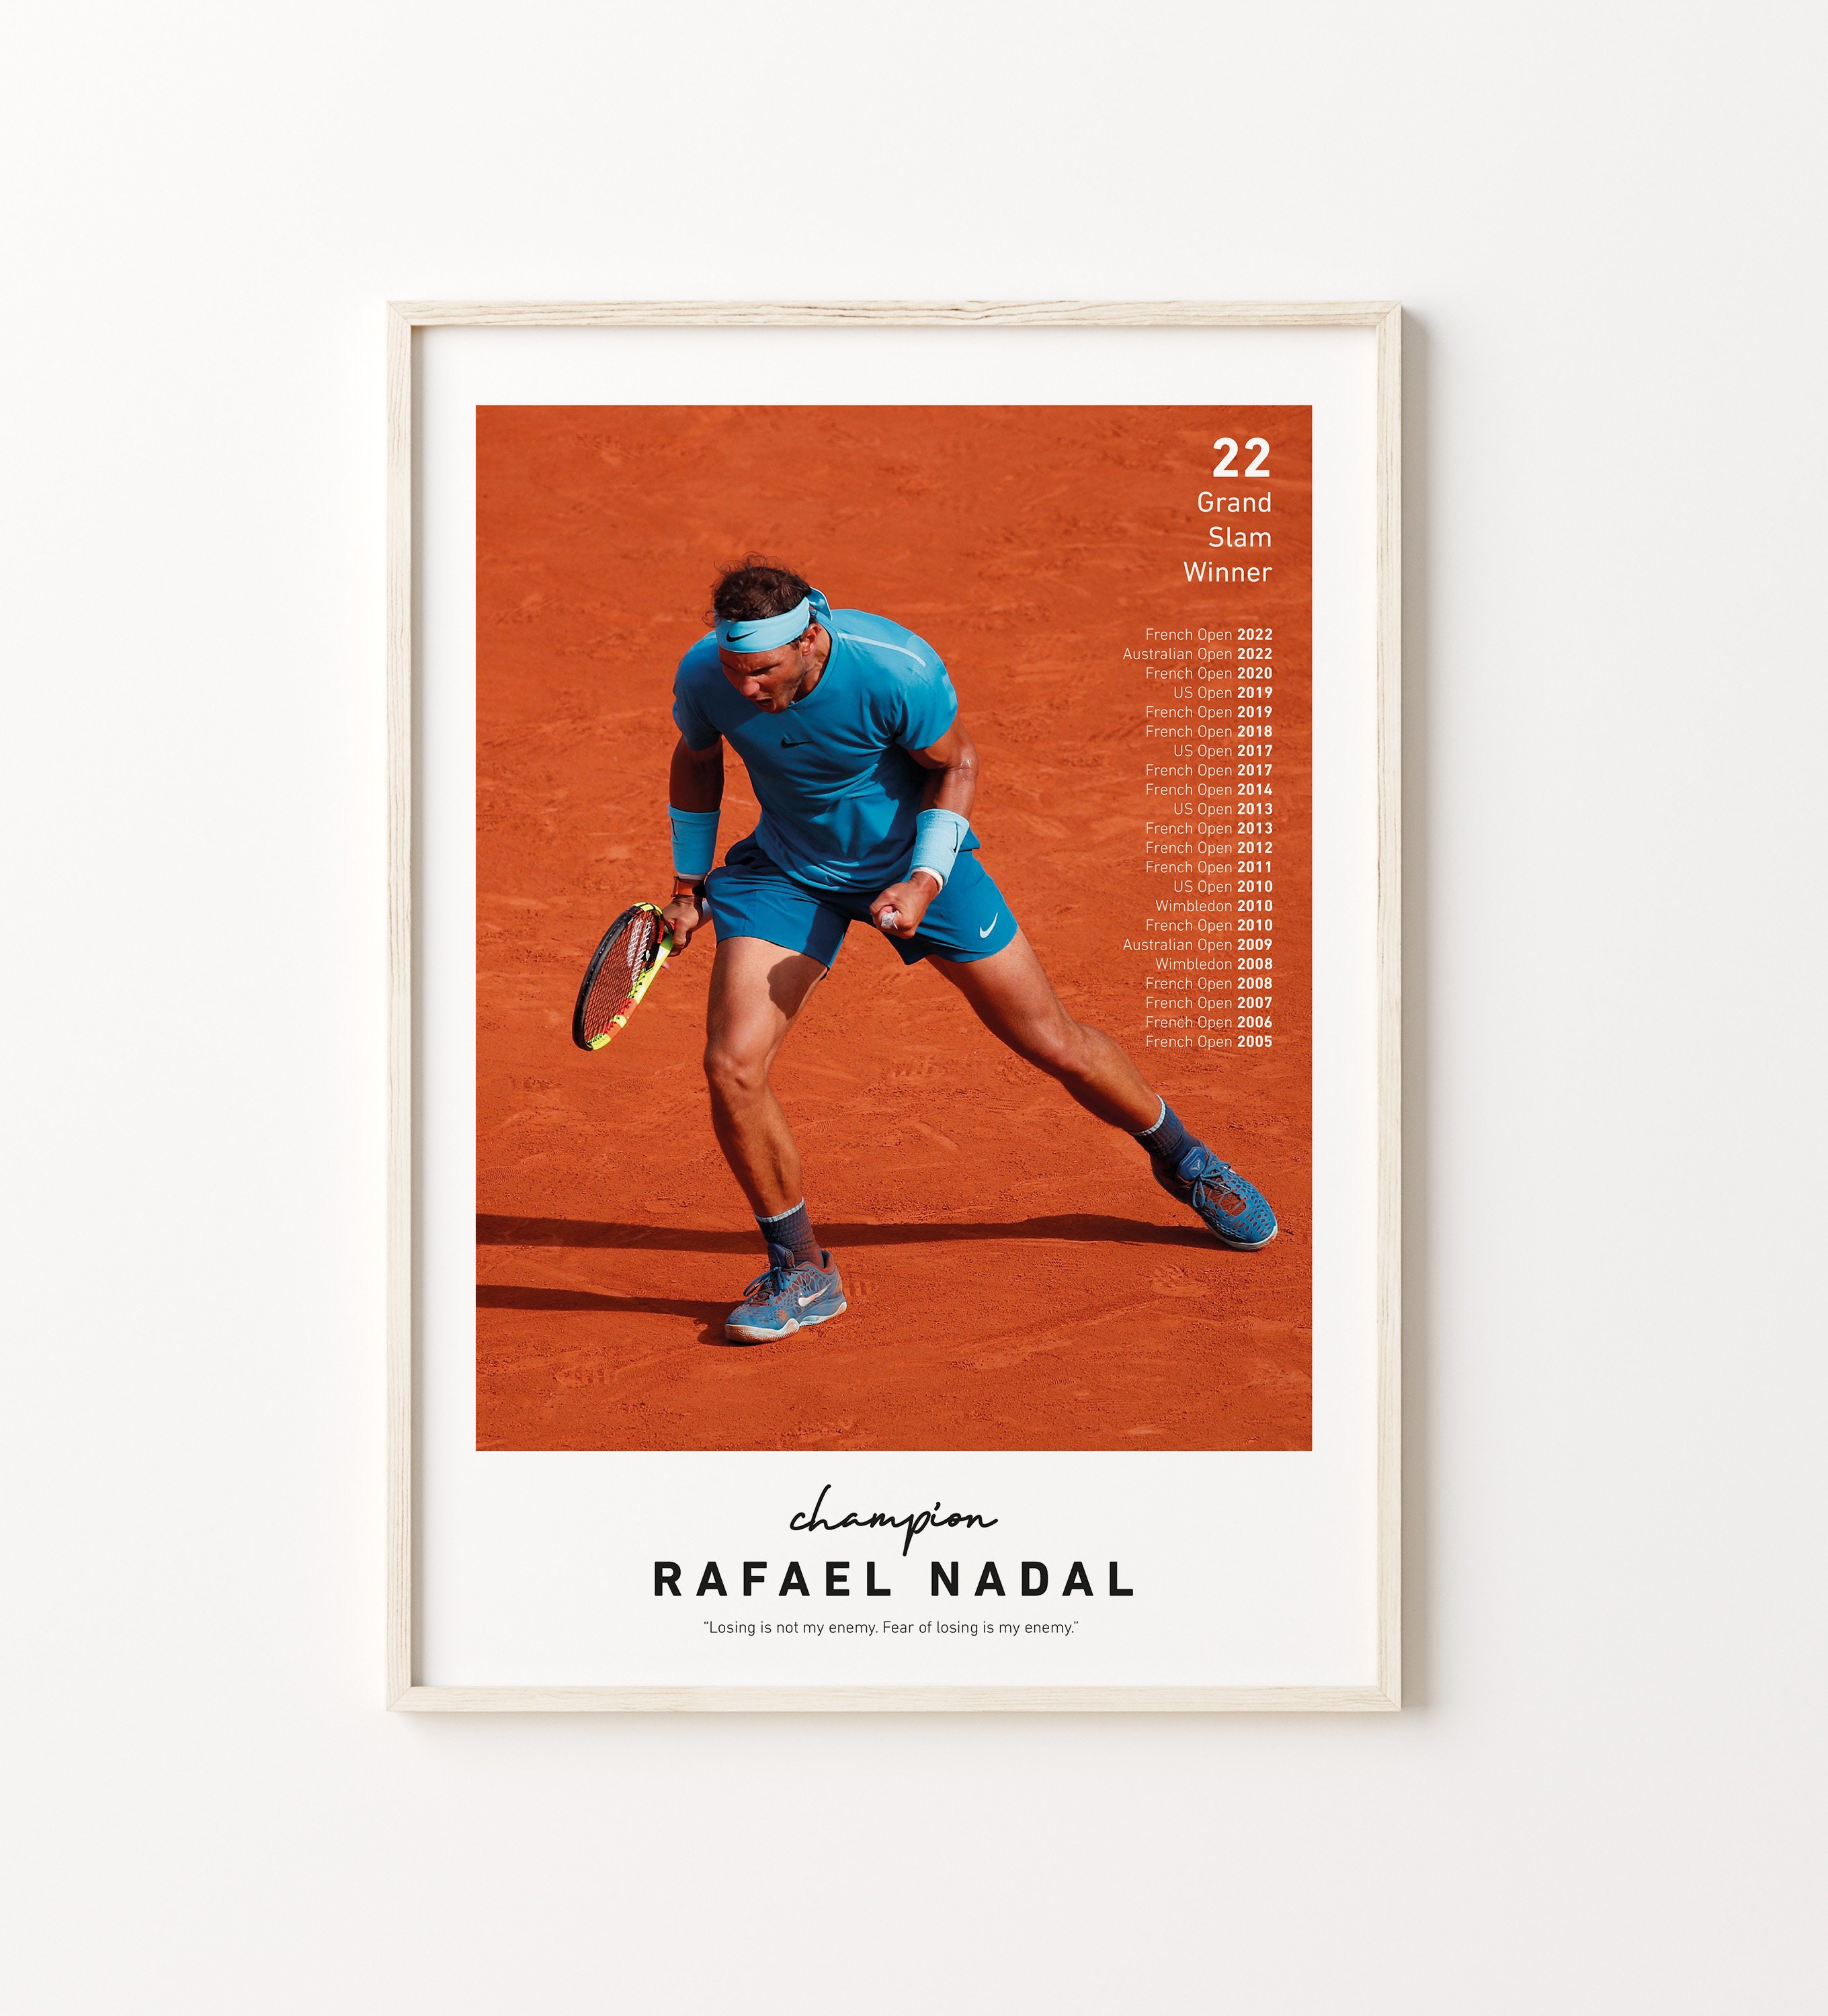 Adesivos nos dedos porquê, Rafael Nadal?